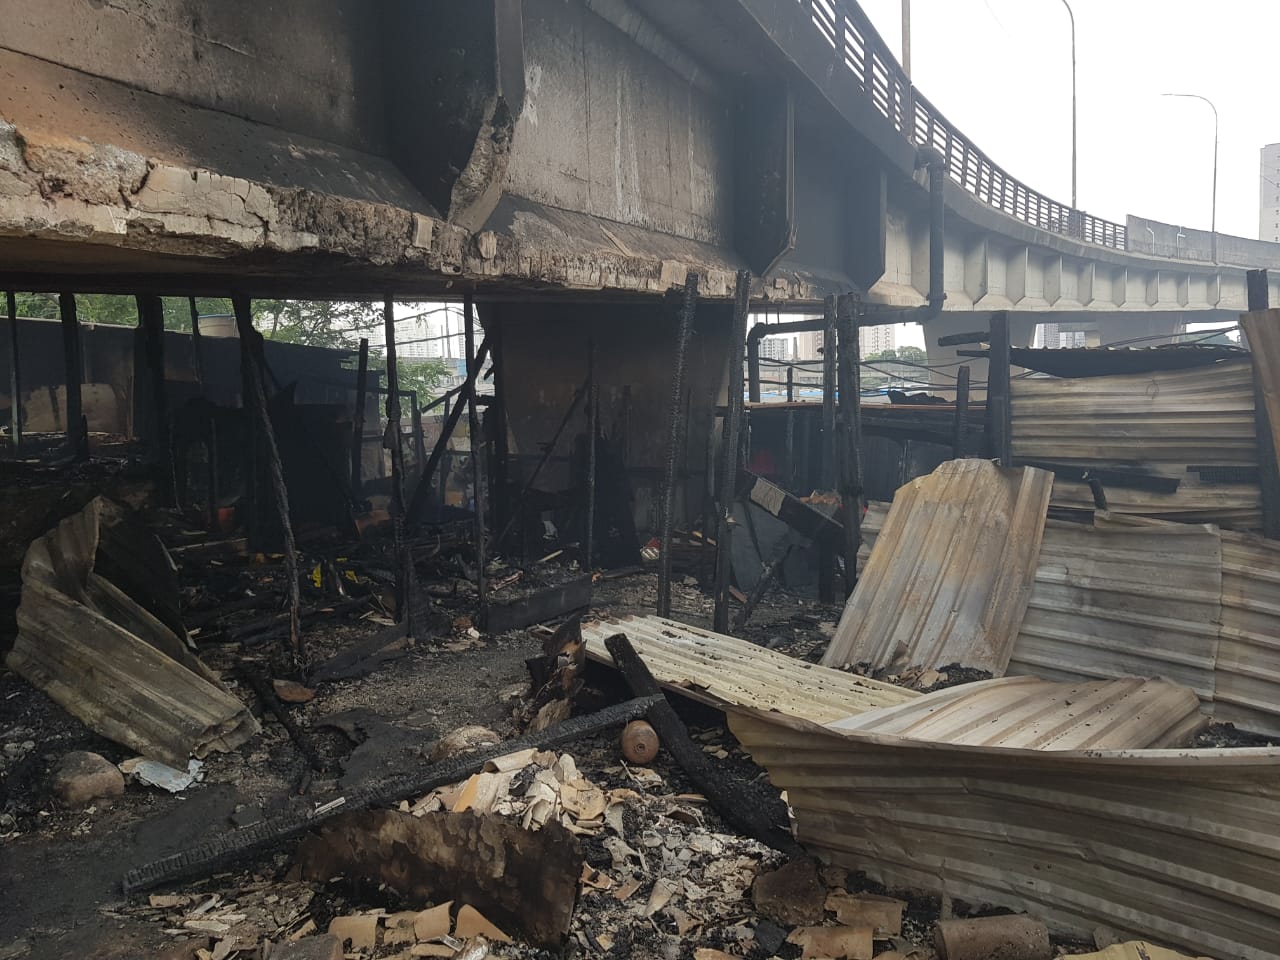 Imagem mostra área incendiada, entre os destroços, imagem da parte debaixo do viaduto com ferragens, pedaços de madeiras, tocos, pedras, telhas